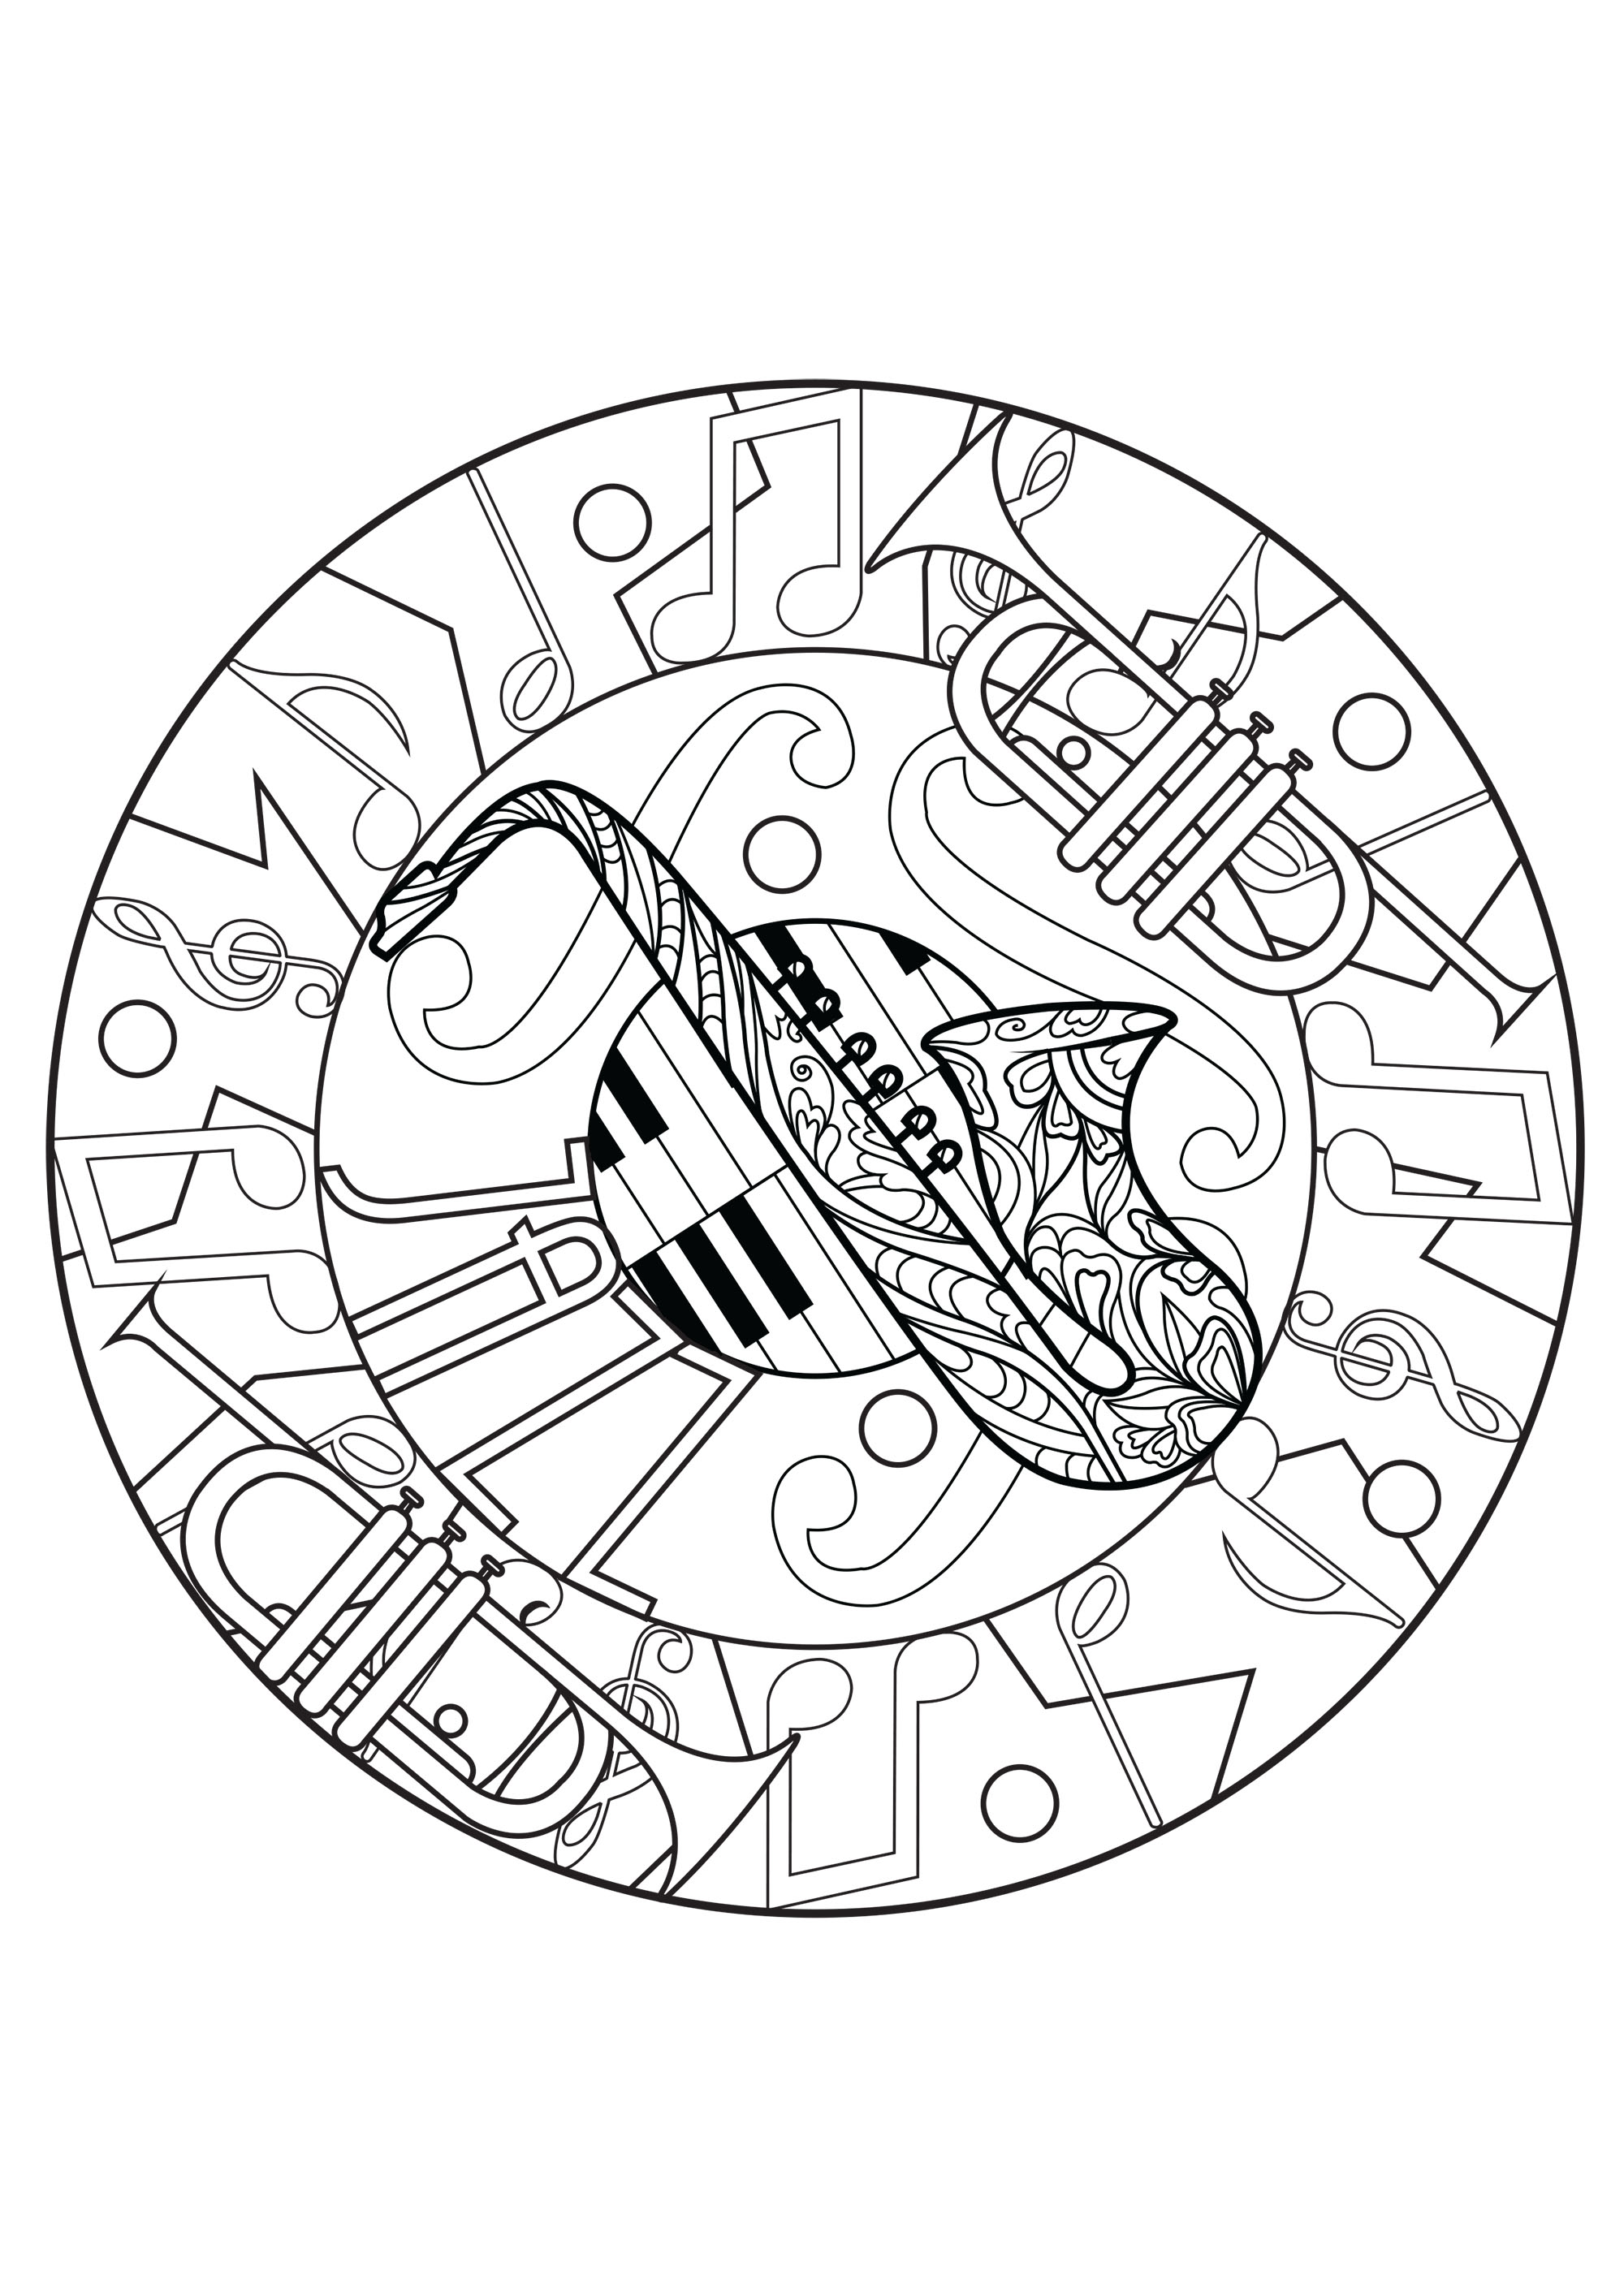 Melodiöse Mandala von einem Saxophon, Trompeten und Klaviertasten zusammengesetztEine schöne Schöpfung, die die Magie der Jazz-Musik und seine eingängigen Rhythmen hervorruft.
